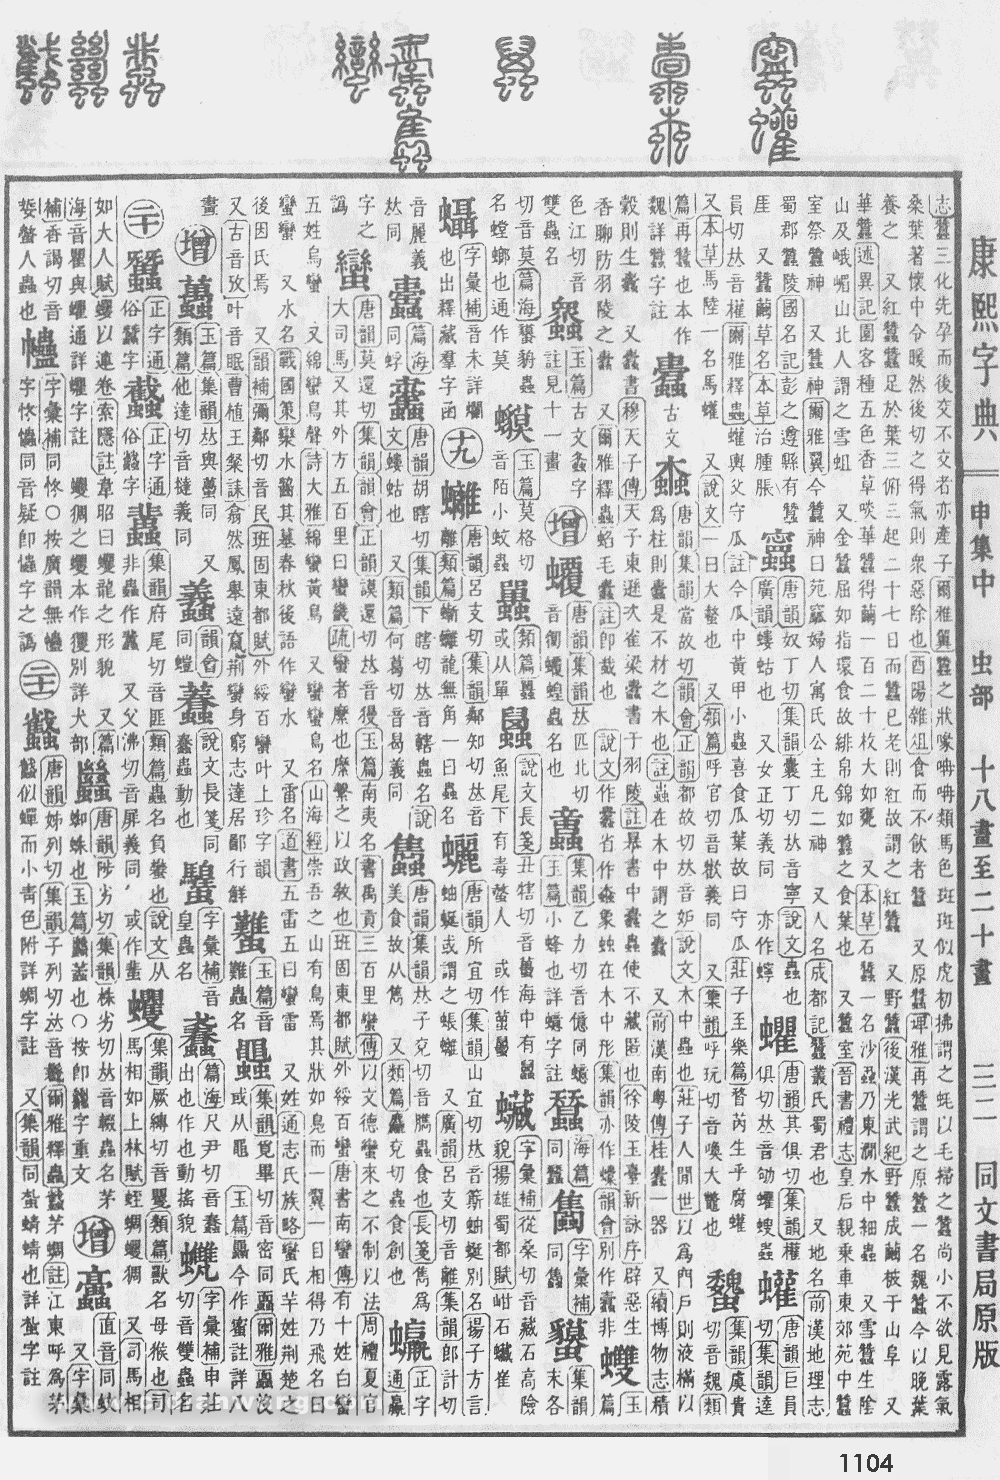 康熙字典掃描版第1104頁